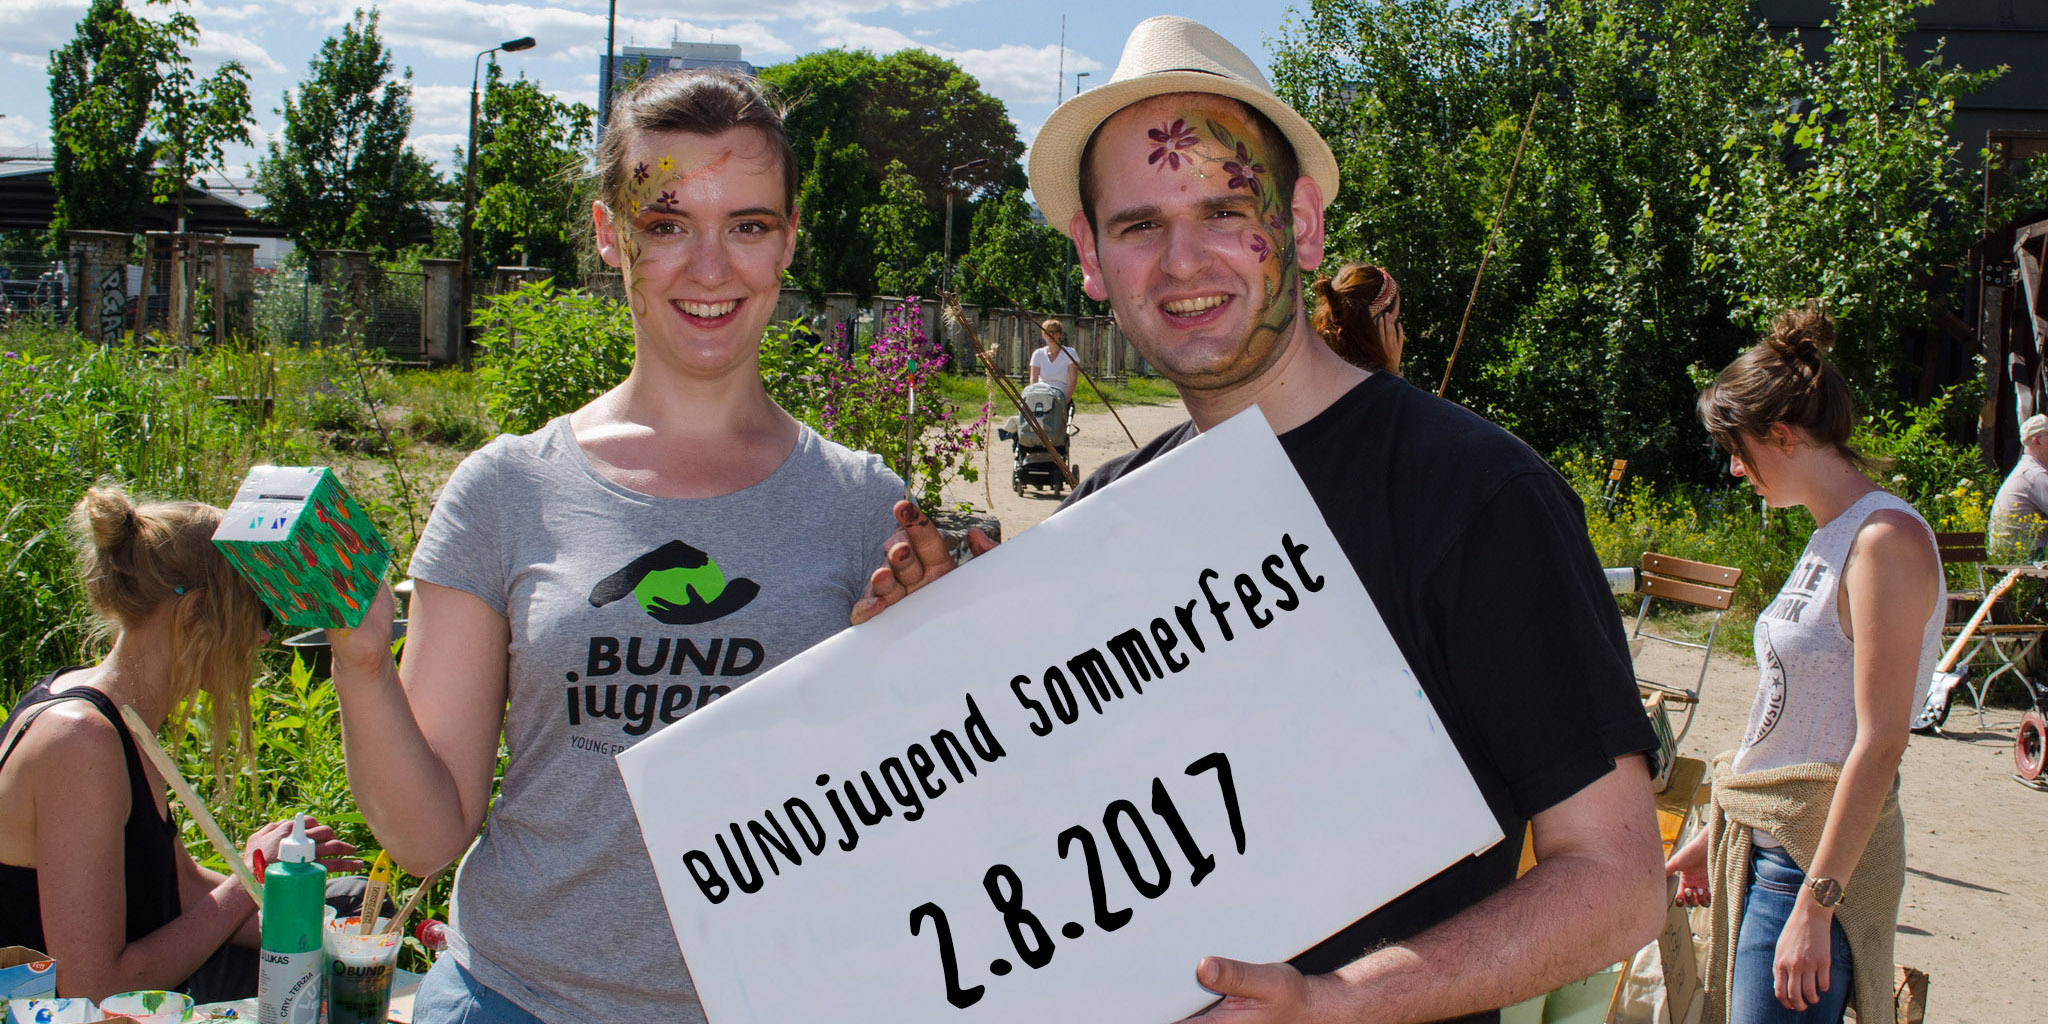 BUNDjugend-Sommerfest am 2.8.